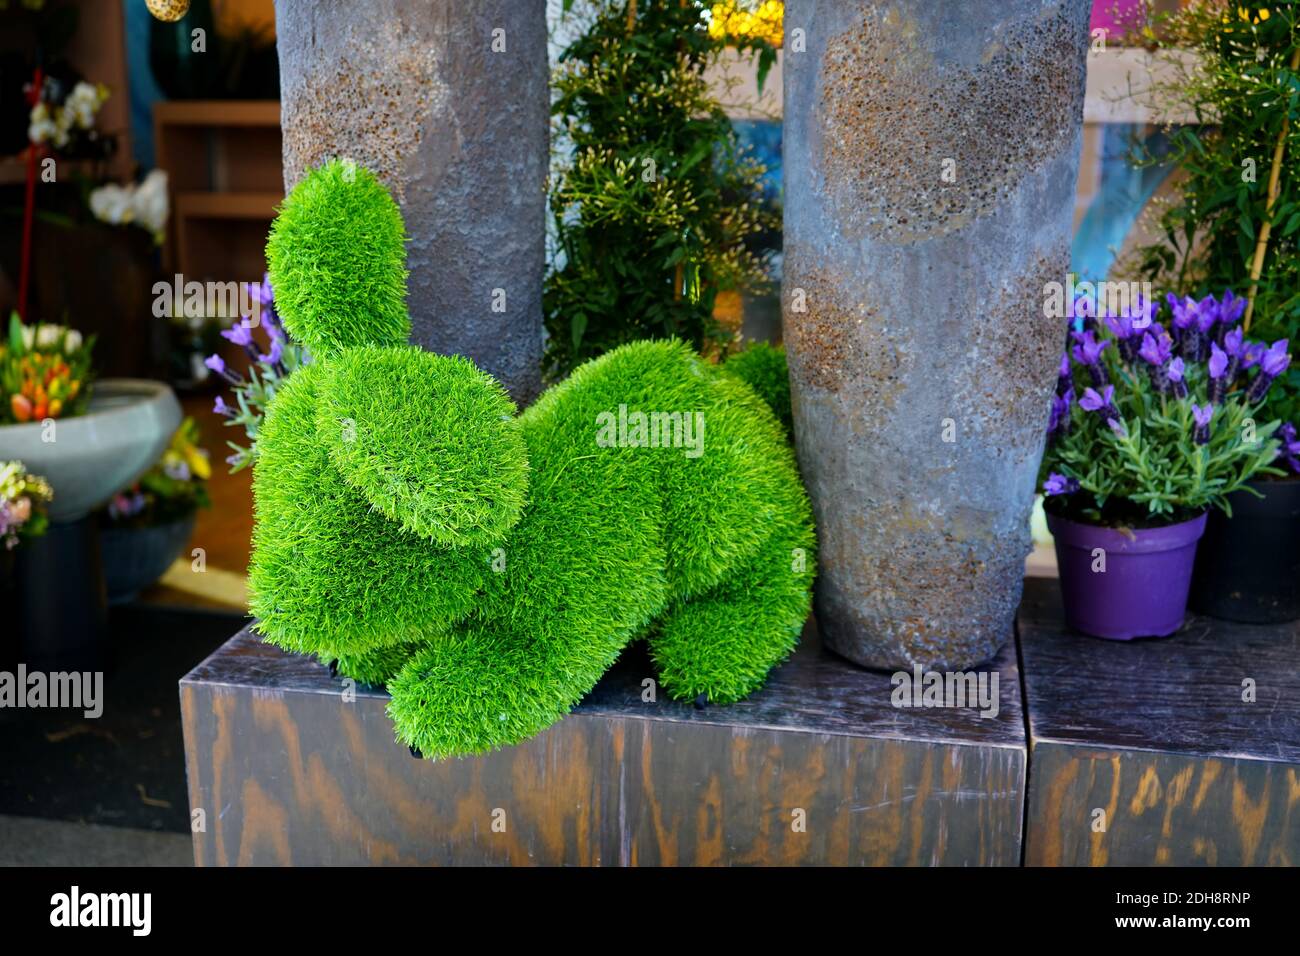 Décoration de Pâques colorée et unique devant un fleuriste. Lapin de Pâques en herbe verte. Banque D'Images